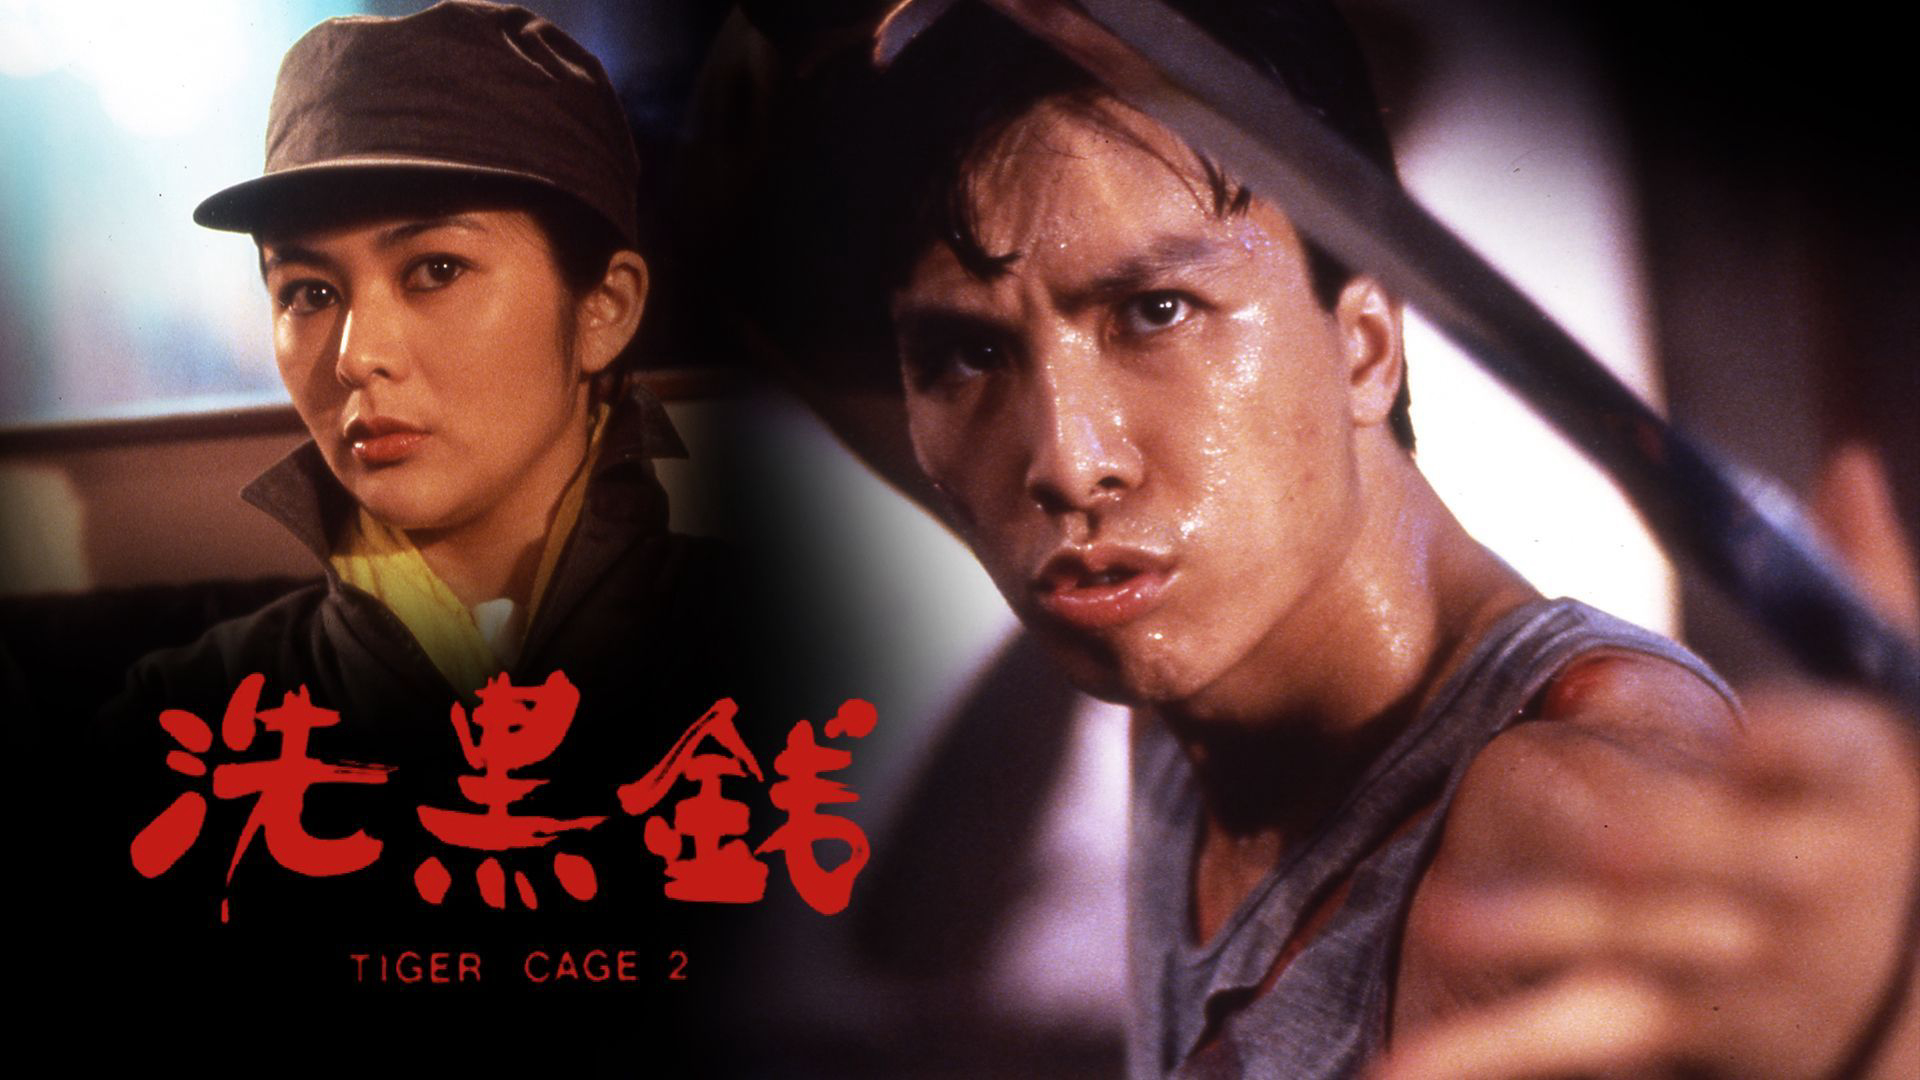 Tiger Cage II / Tiger Cage II (1990)